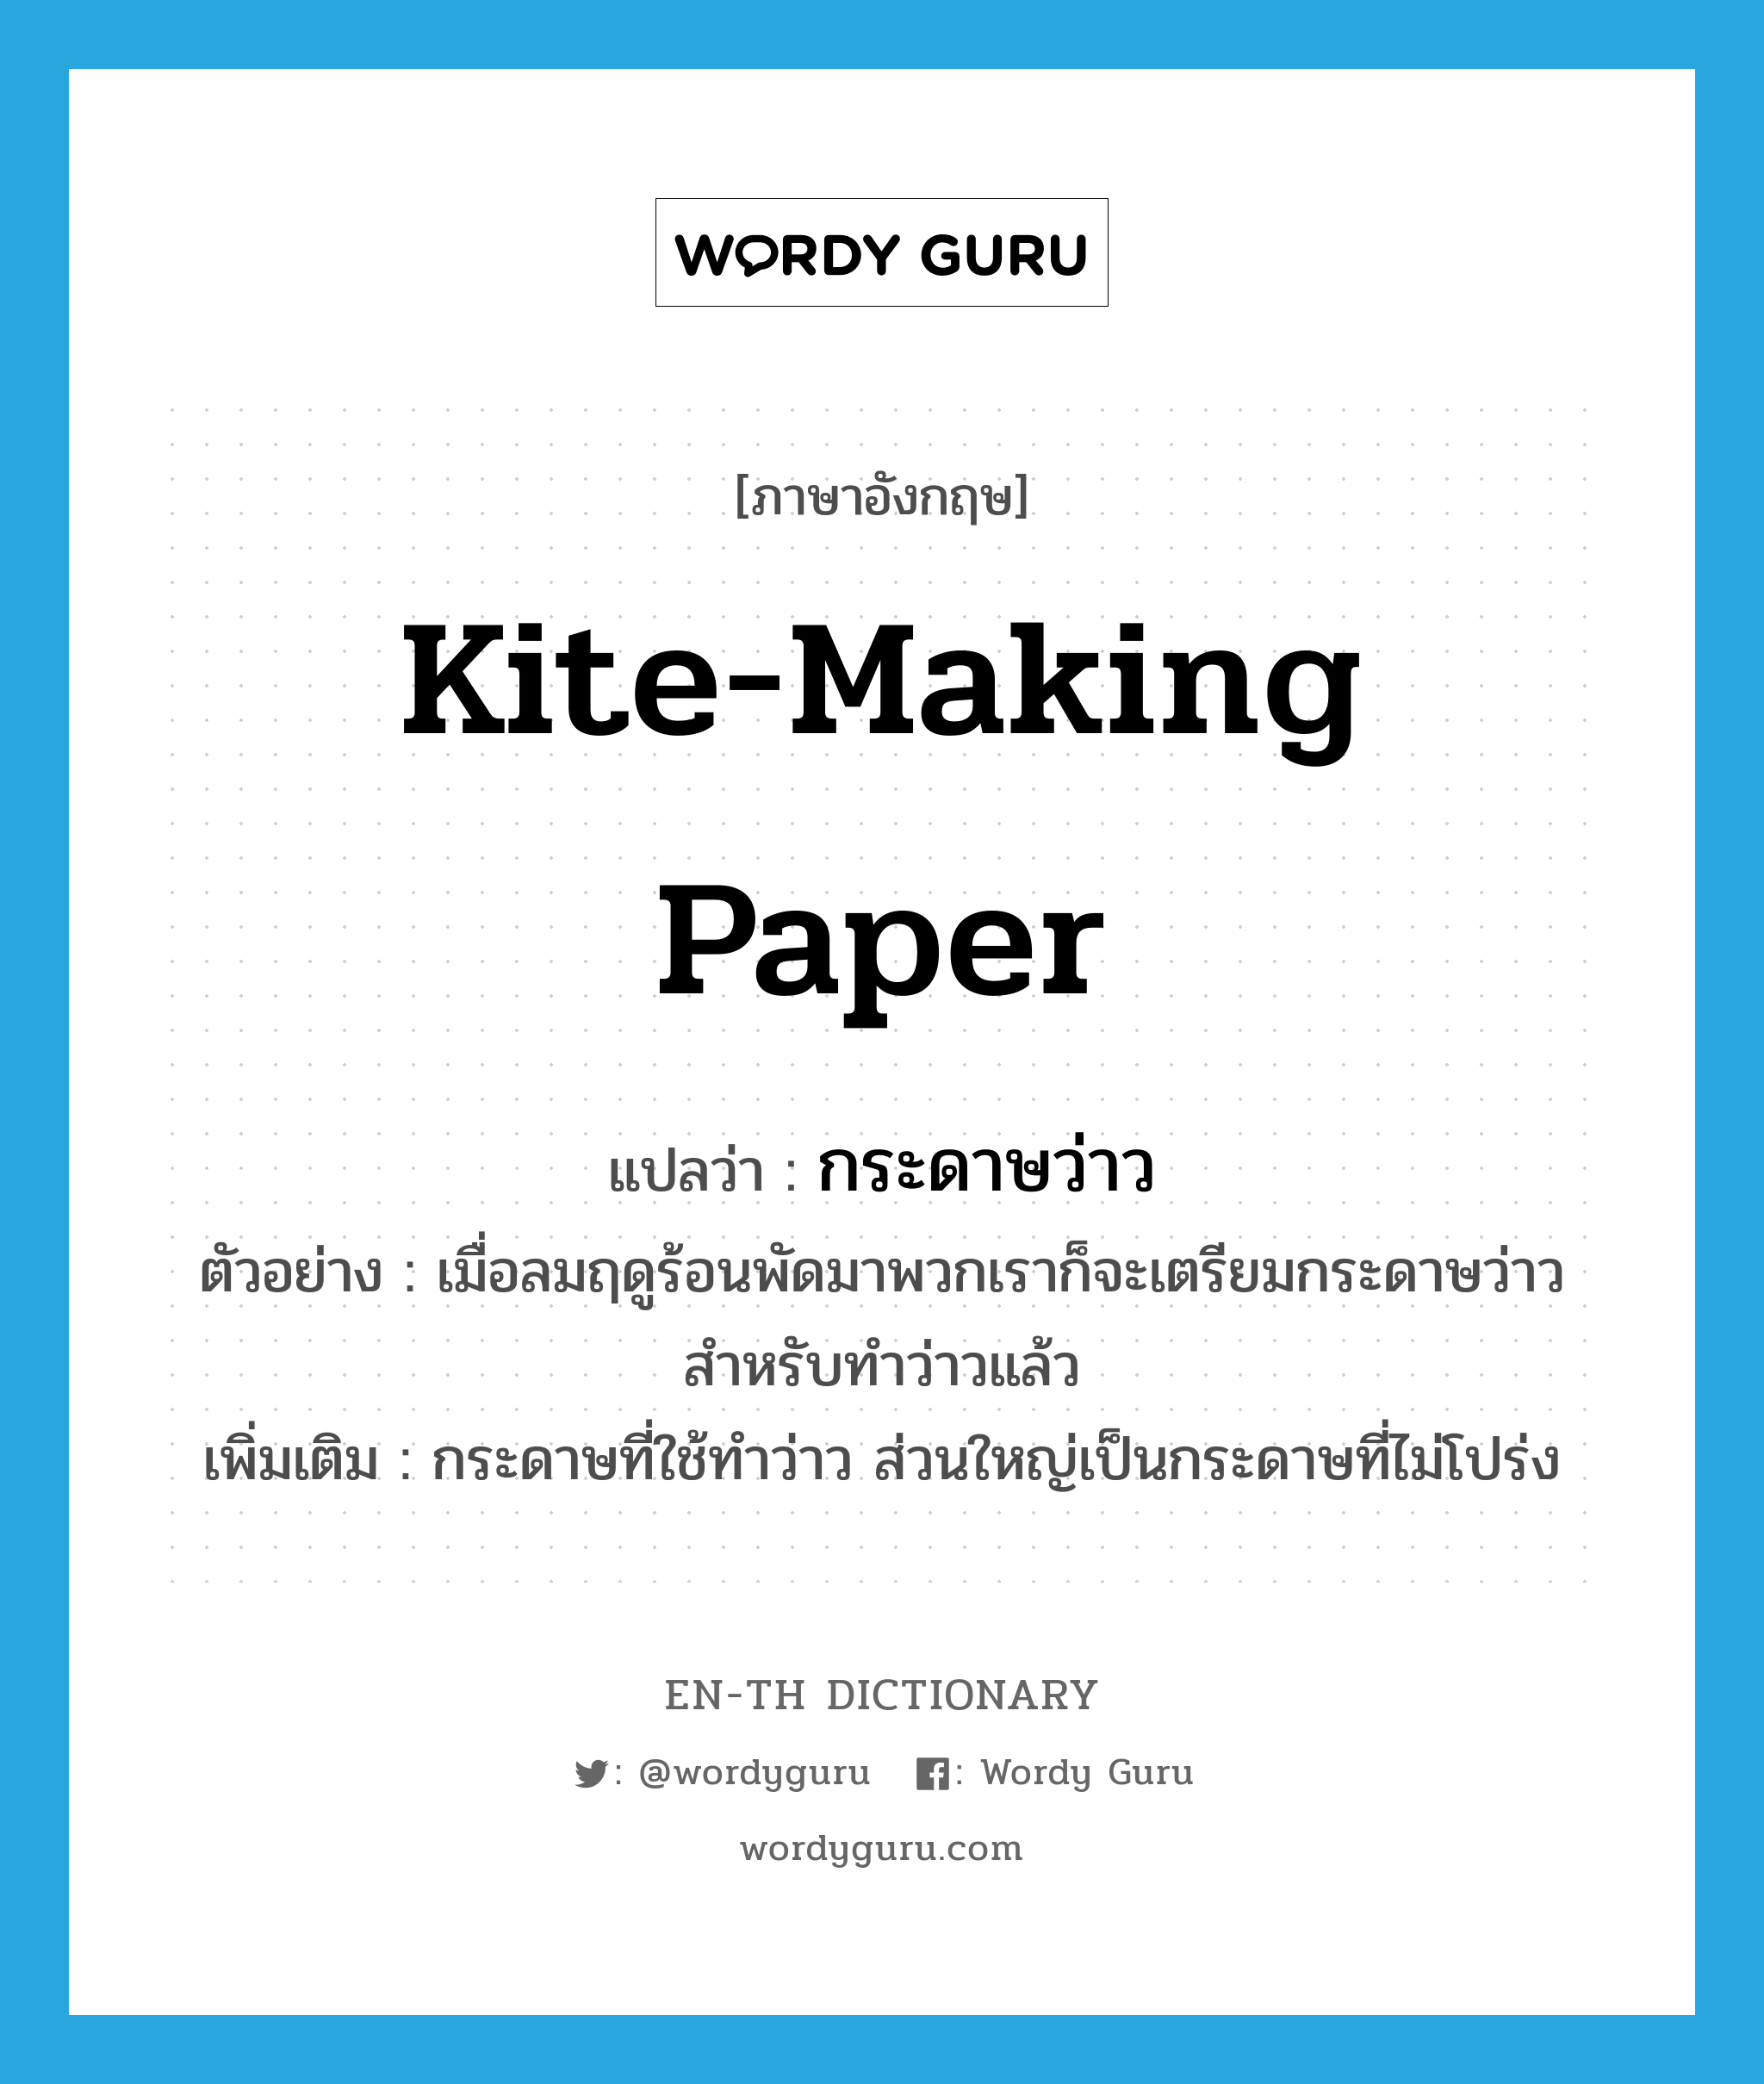 kite-making paper แปลว่า?, คำศัพท์ภาษาอังกฤษ kite-making paper แปลว่า กระดาษว่าว ประเภท N ตัวอย่าง เมื่อลมฤดูร้อนพัดมาพวกเราก็จะเตรียมกระดาษว่าวสำหรับทำว่าวแล้ว เพิ่มเติม กระดาษที่ใช้ทำว่าว ส่วนใหญ่เป็นกระดาษที่ไม่โปร่ง หมวด N